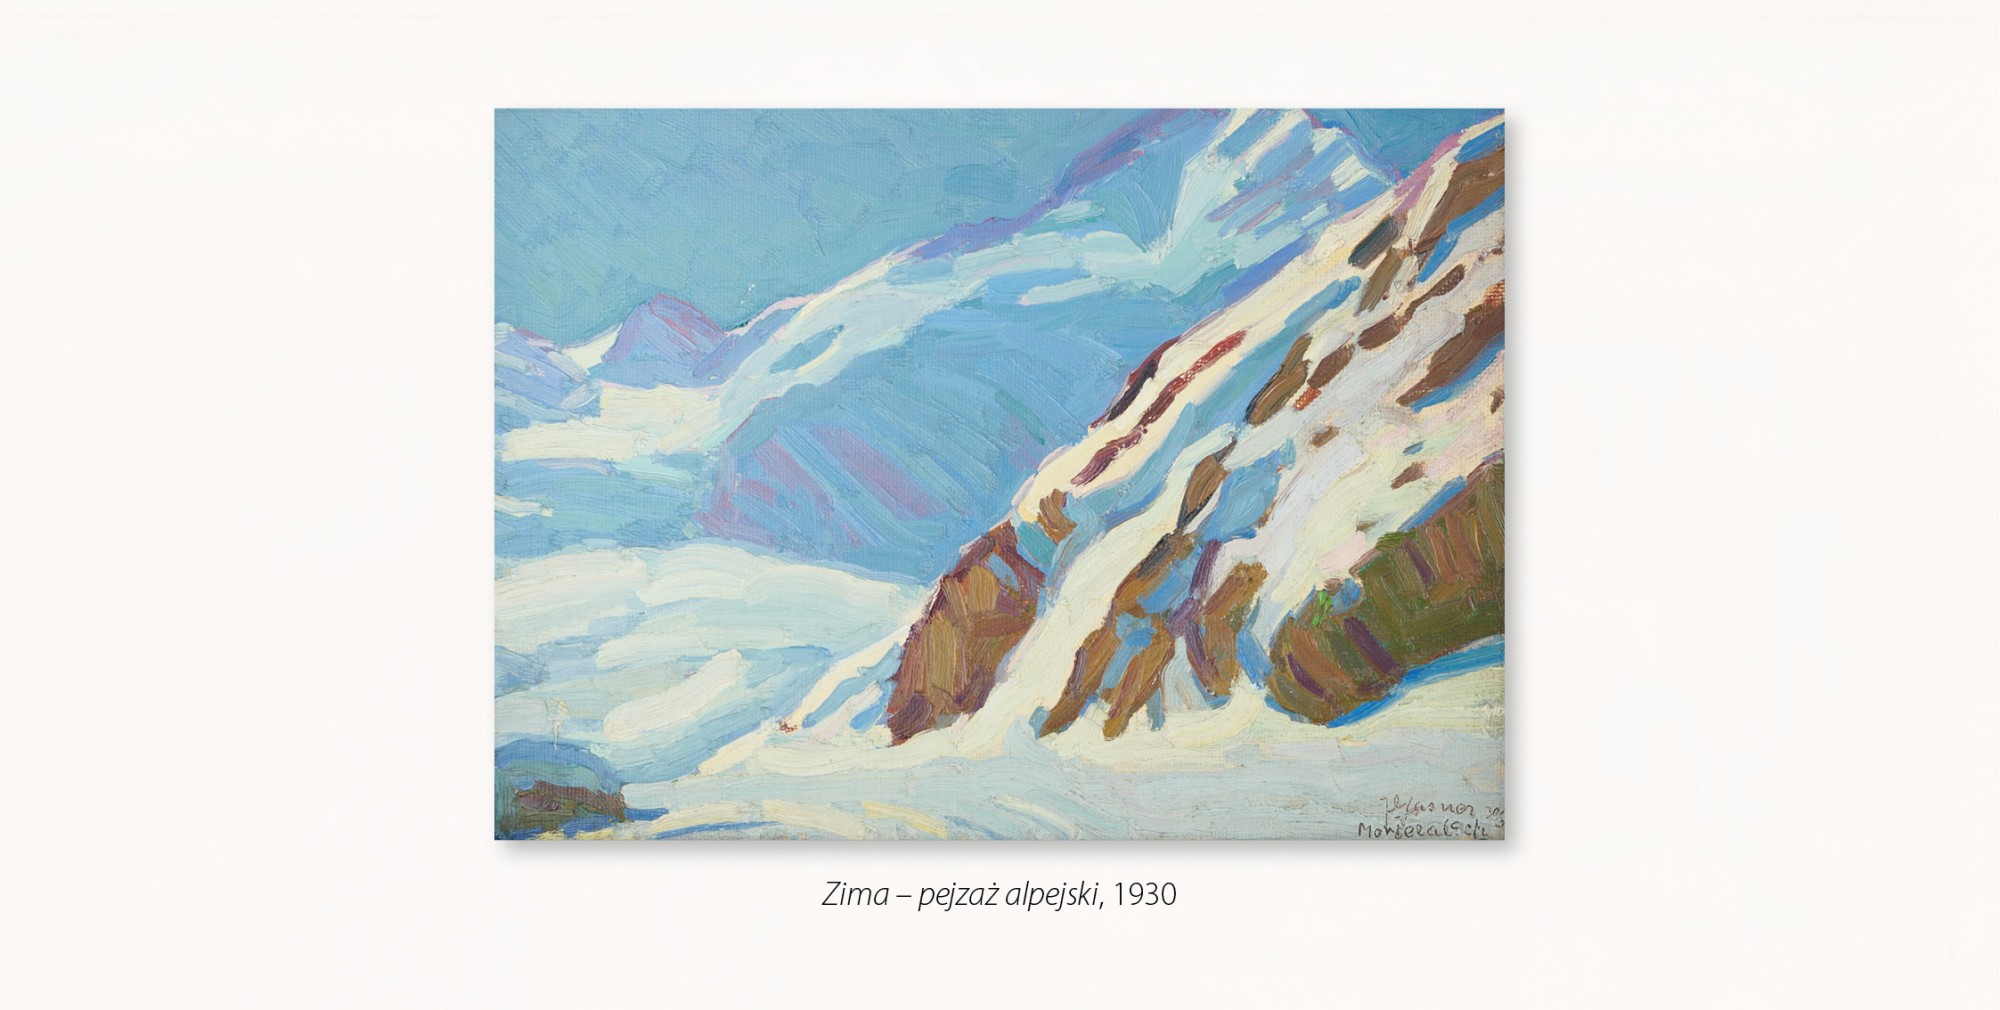 pejzaż ukazujący masywne, strome alpejskie wzniesienia pokryte śniegiem, dominują kolory niebieskie i biel, z wyraźnym akcentem brązowych skał na pierwszym planie